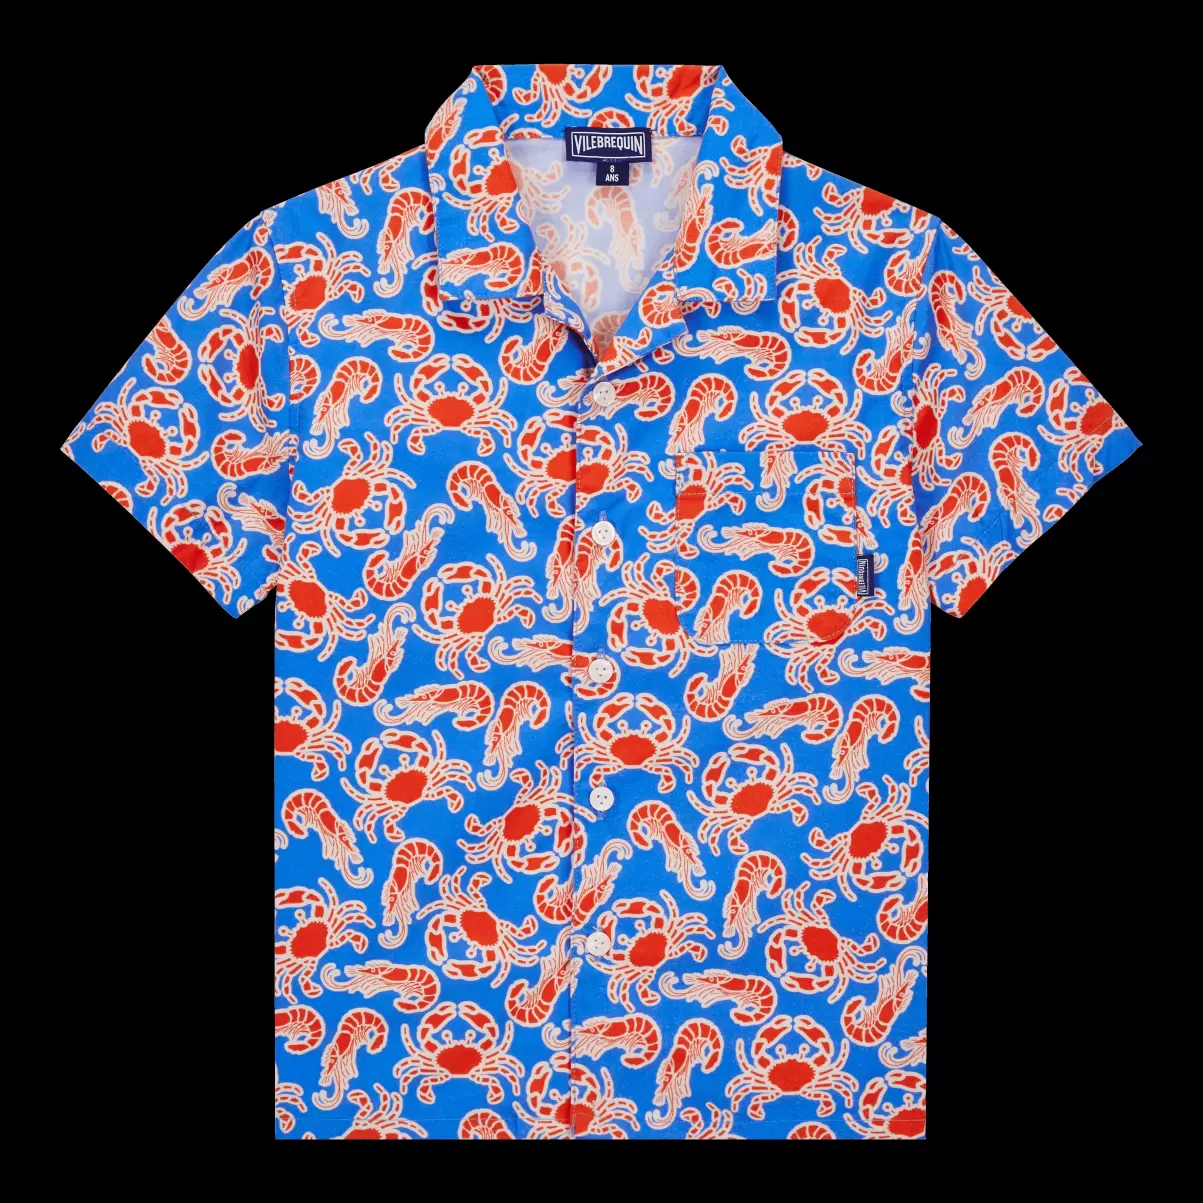 Earthenware / Azul Vilebrequin Camisas Salida Camisa Con Estampado Crabs & Shrimps Para Niño Niño